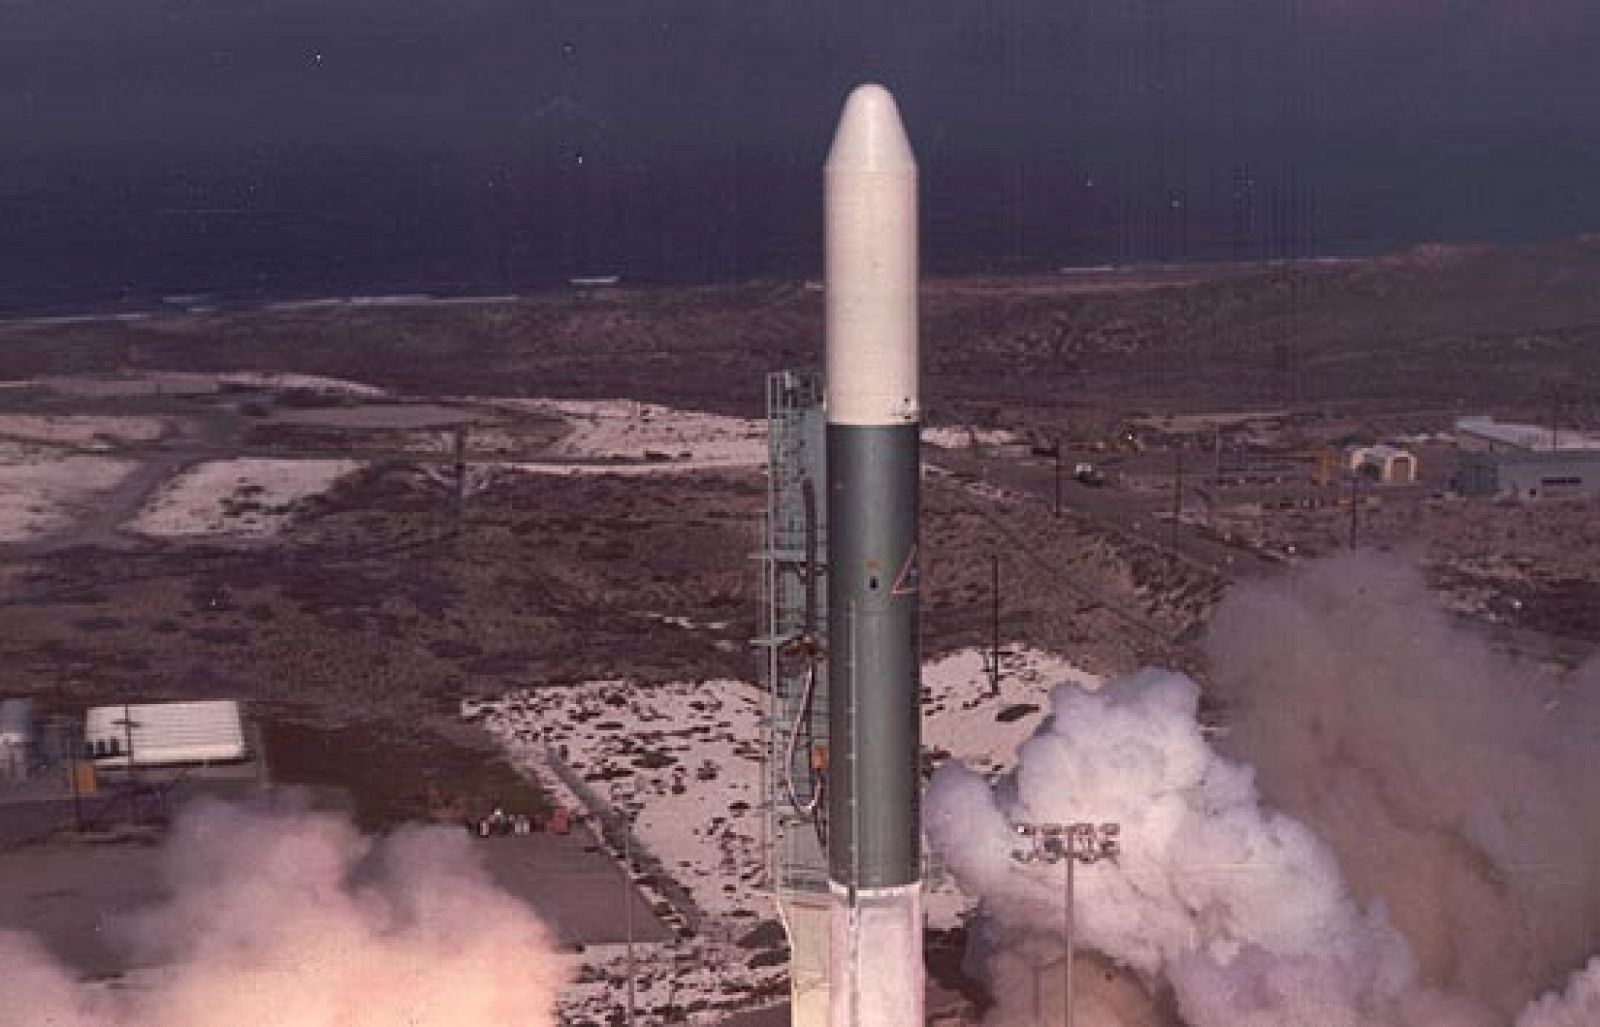 ¿Te acuerdas? - Hace 34 años que se lanzó el primer satélite español